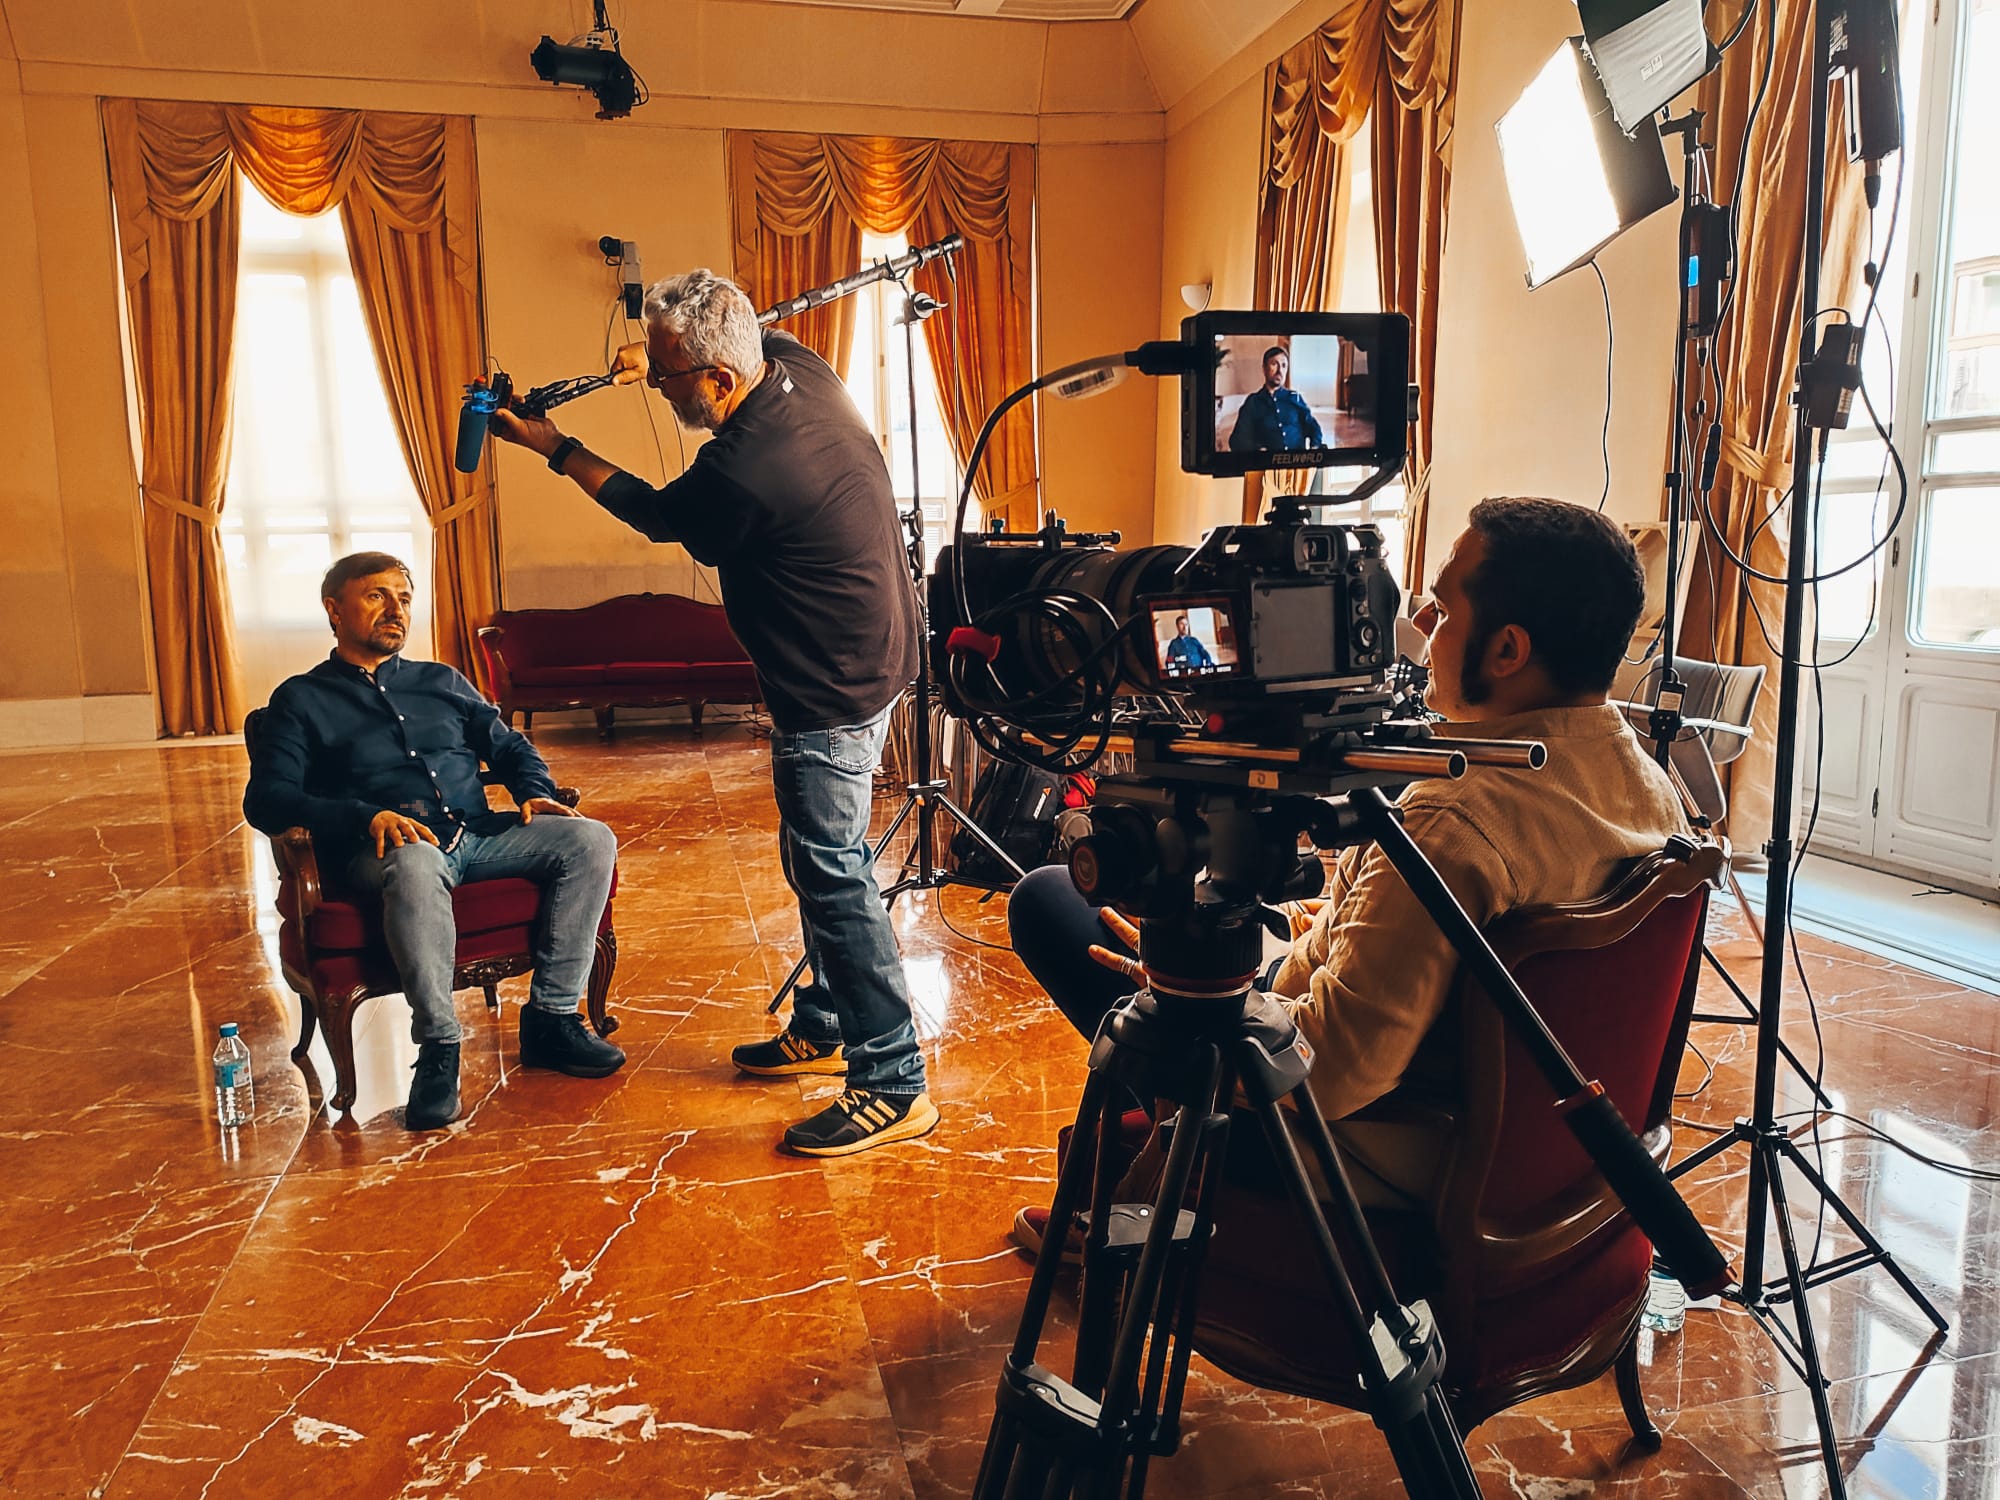 Rodaje del documental 'Sembrando sueños', de Alfonso Sanchez, programado en Panorama andaluz.